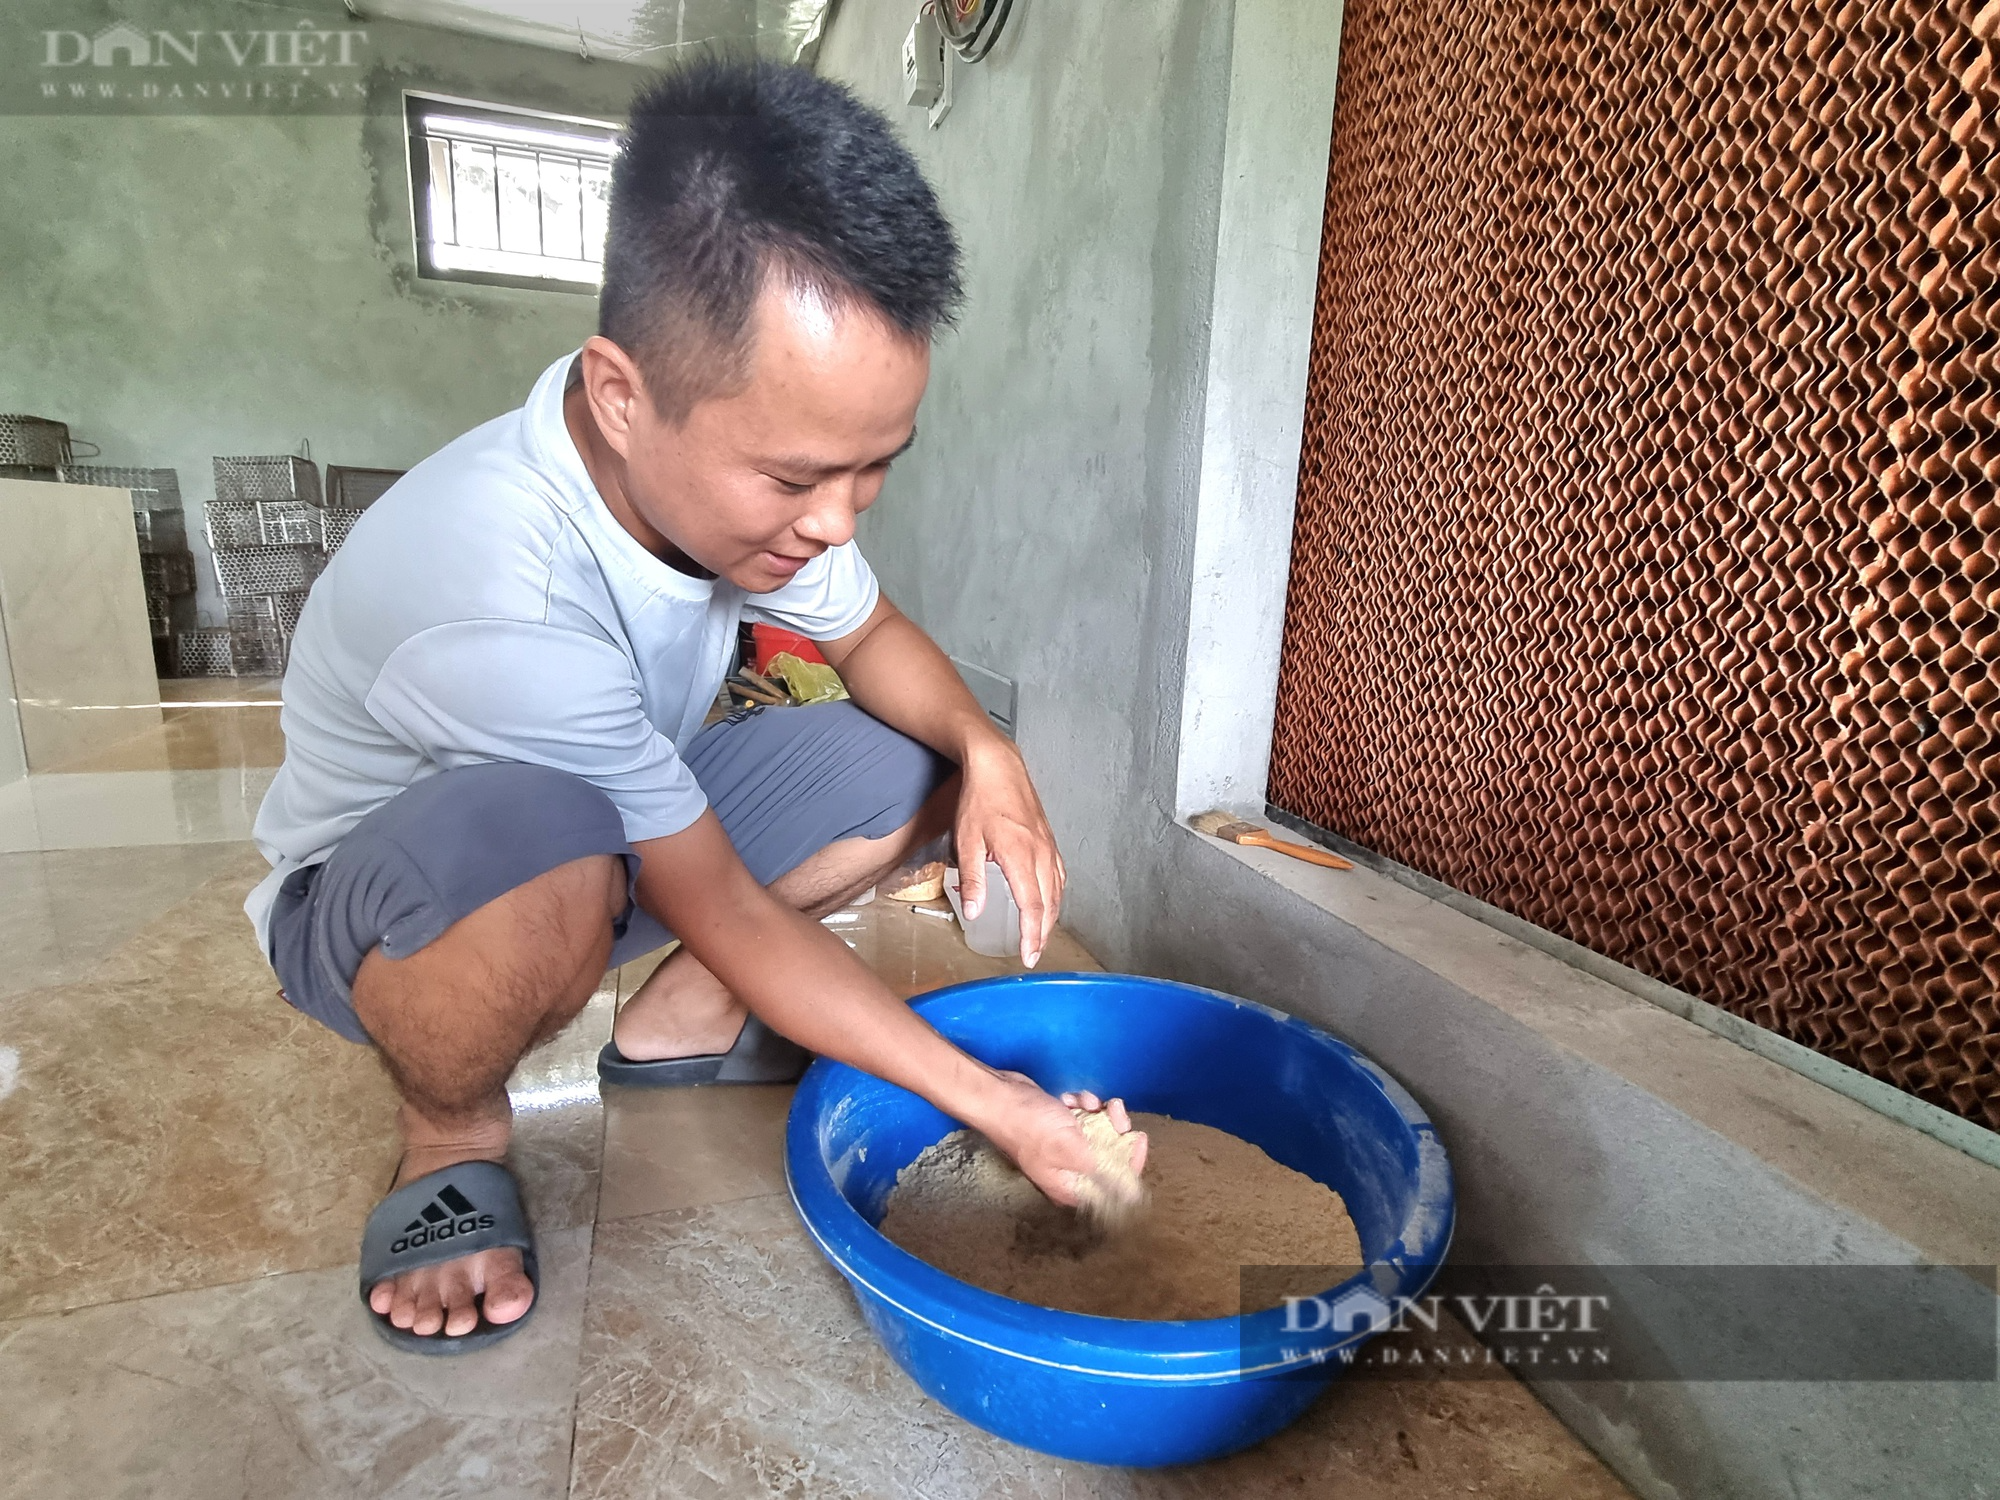 Bỏ nghề kỹ sư xây dựng, 9X Ninh Bình về quê nuôi con dúi mốc lãi 15 triệu đồng/tháng - Ảnh 10.